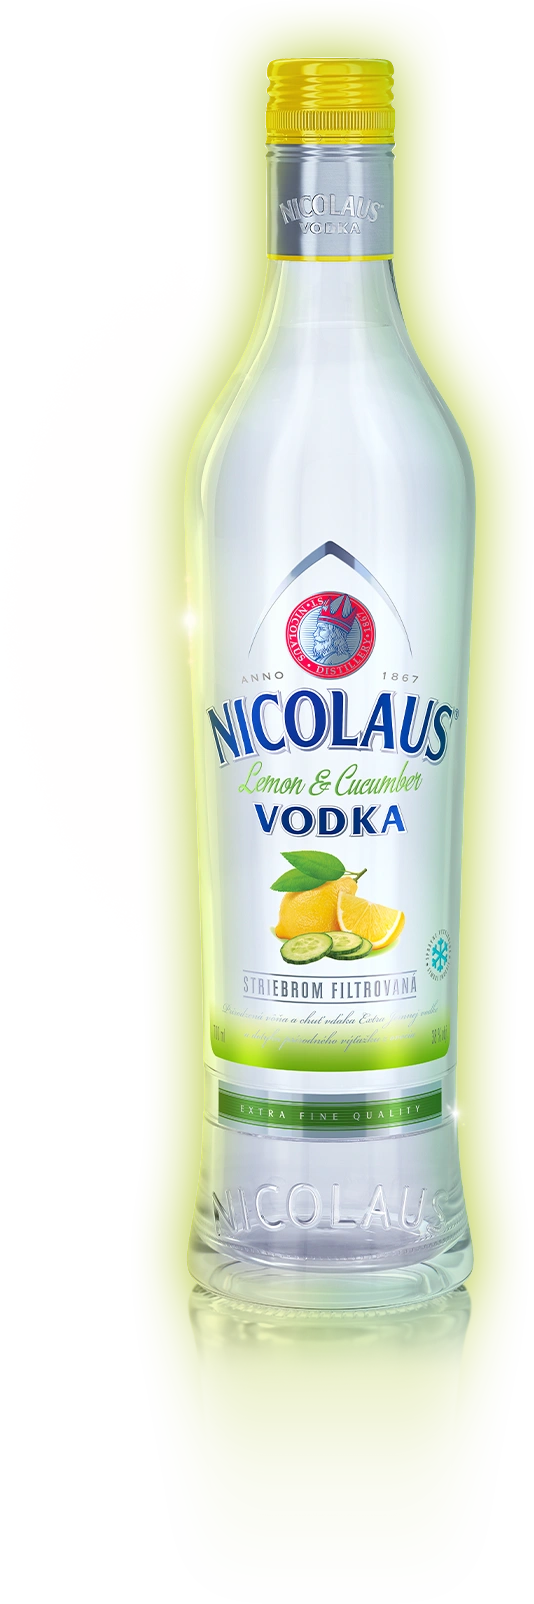 Nicolaus Lemon Cucumber vodka